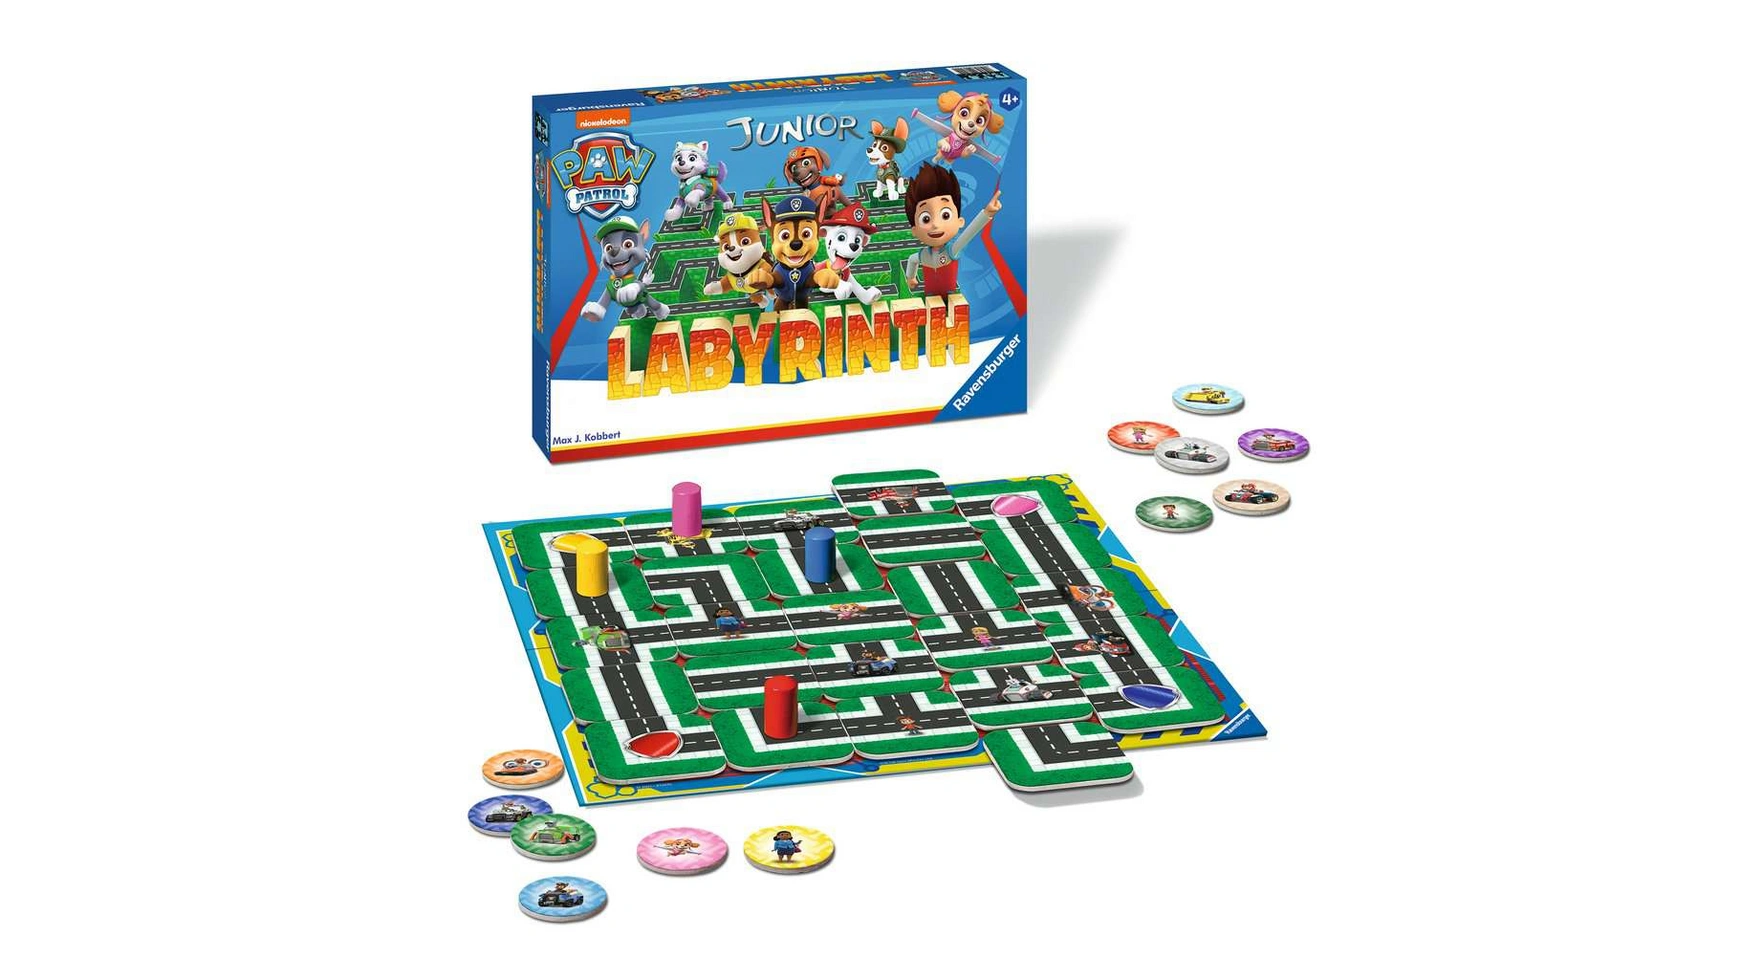 Ravensburger Spiele Paw Patrol Junior Labyrinth, известная настольная игра от Ravensburger в детской версии настольная игра spin master щенячий патруль игровые карты 6033298